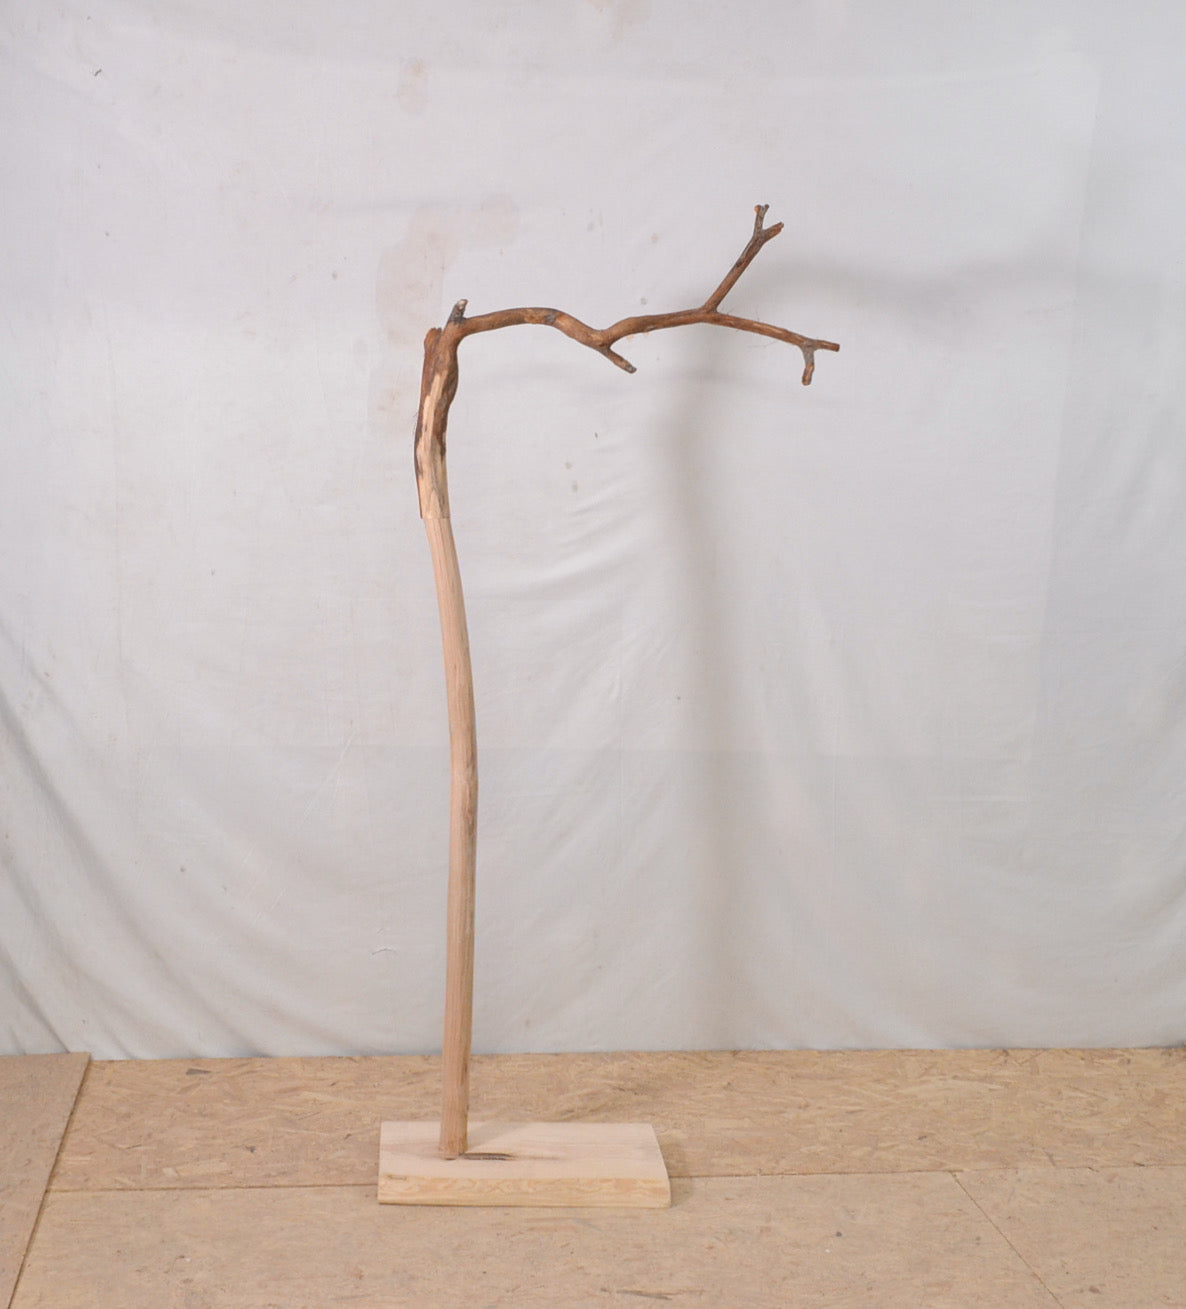 Valet de chambre, portant vêtements en bois avec une branche (chêne)